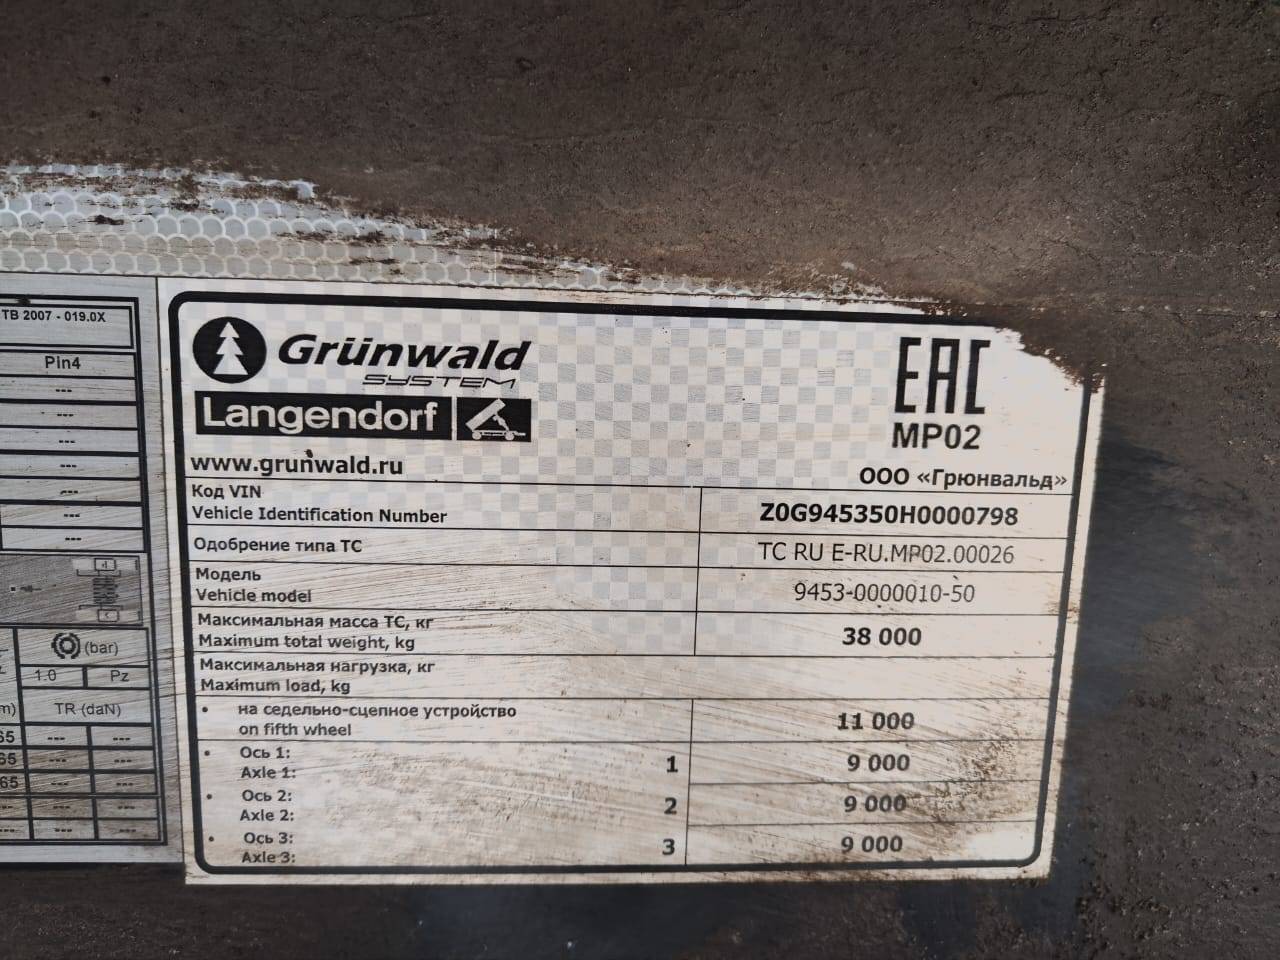 Grunwald Самосвальный TSt 31 (9453-0000010-50) Лот 000000774